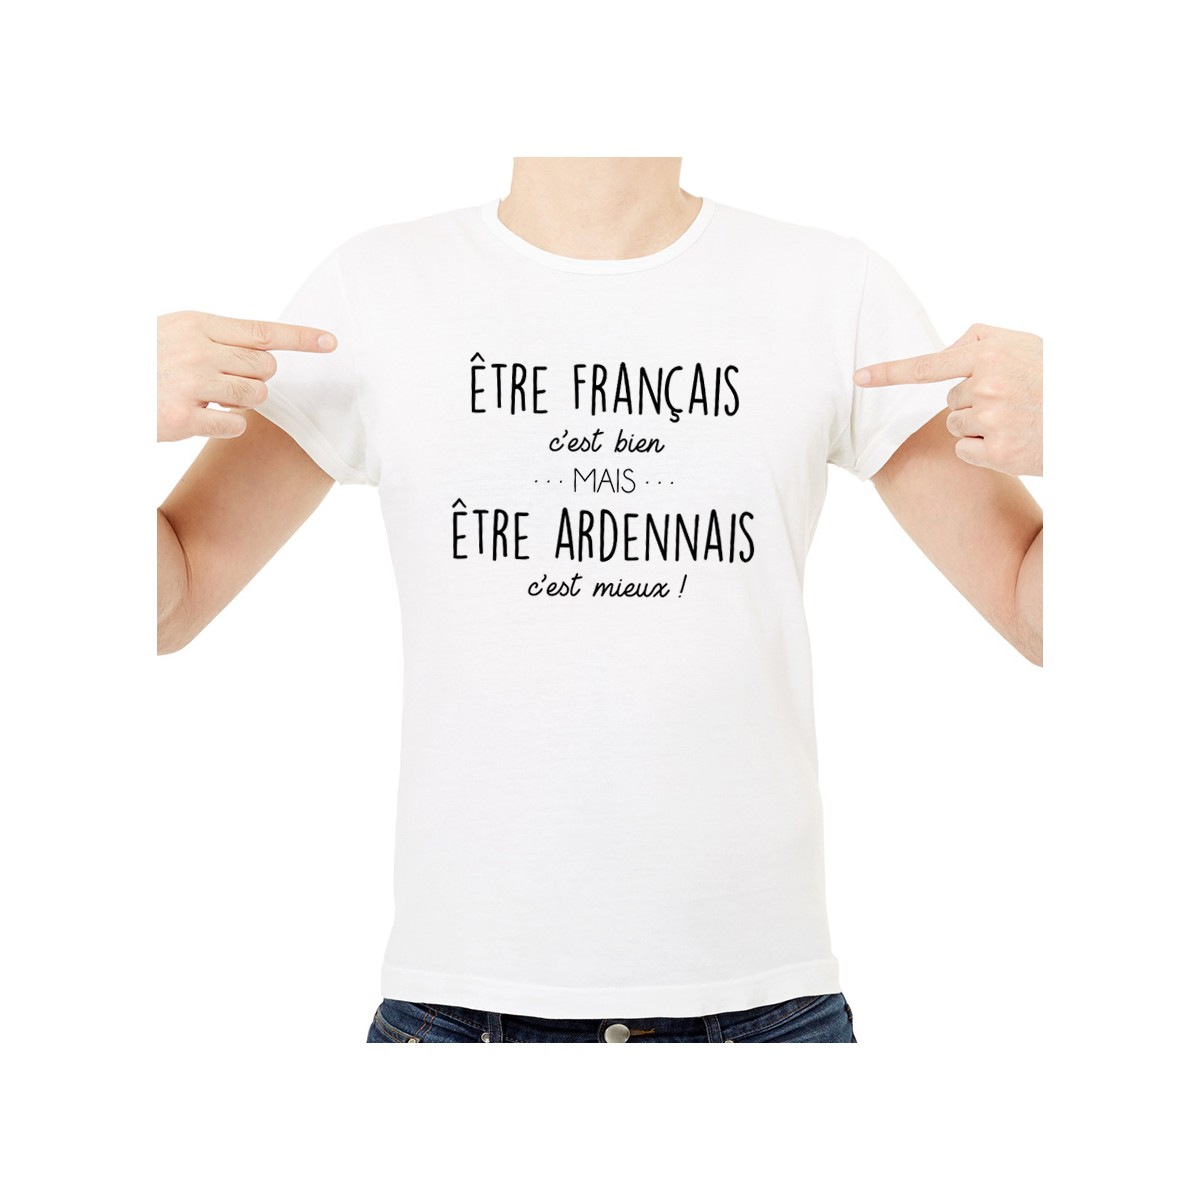 T-shirt Être Ardennais c'est mieux